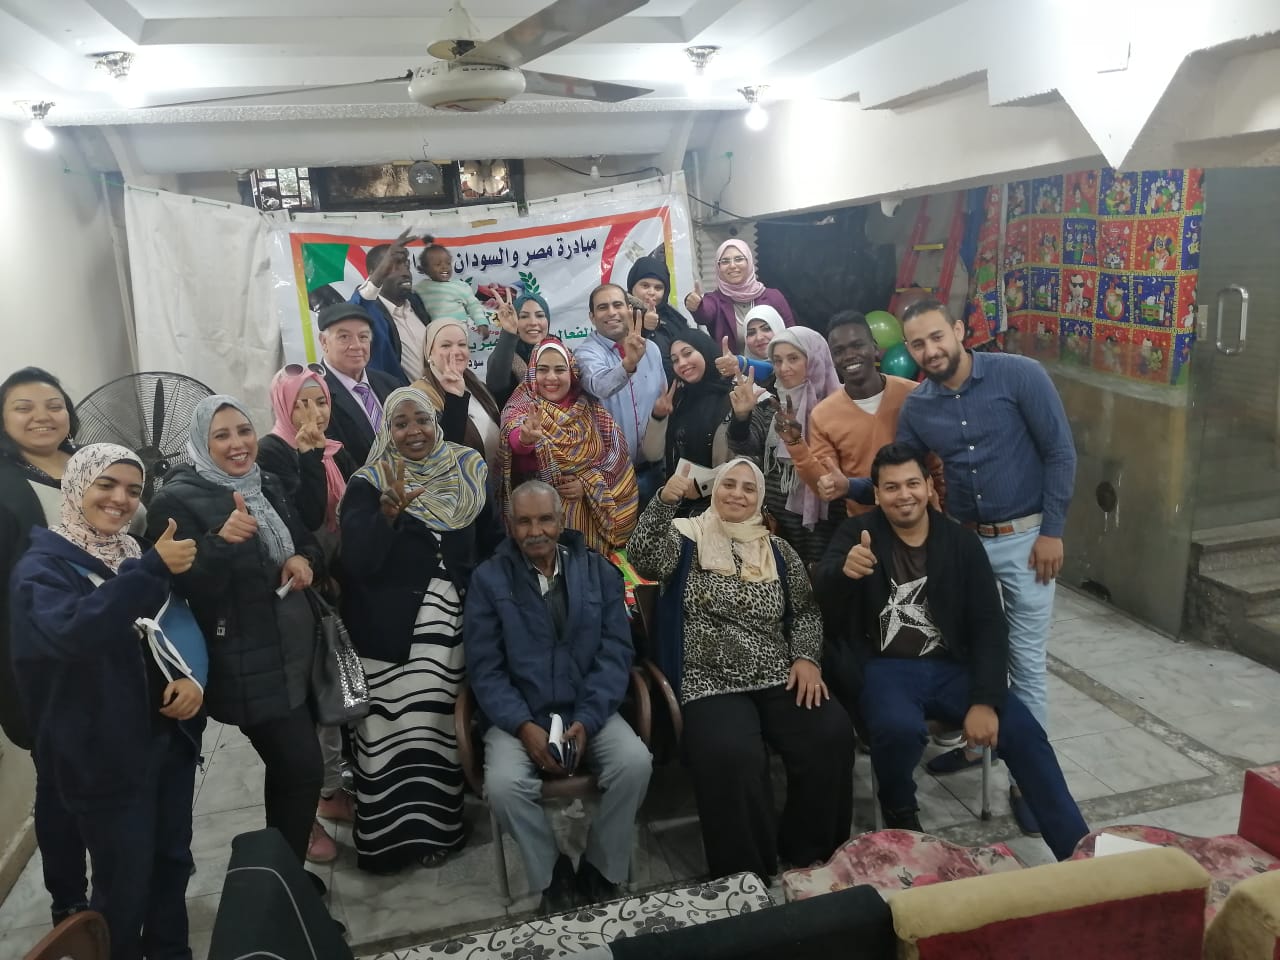   مبادرة مصر والسودان إيد واحدة تقيّم فن الصحفى المذيع  فى ميلانو